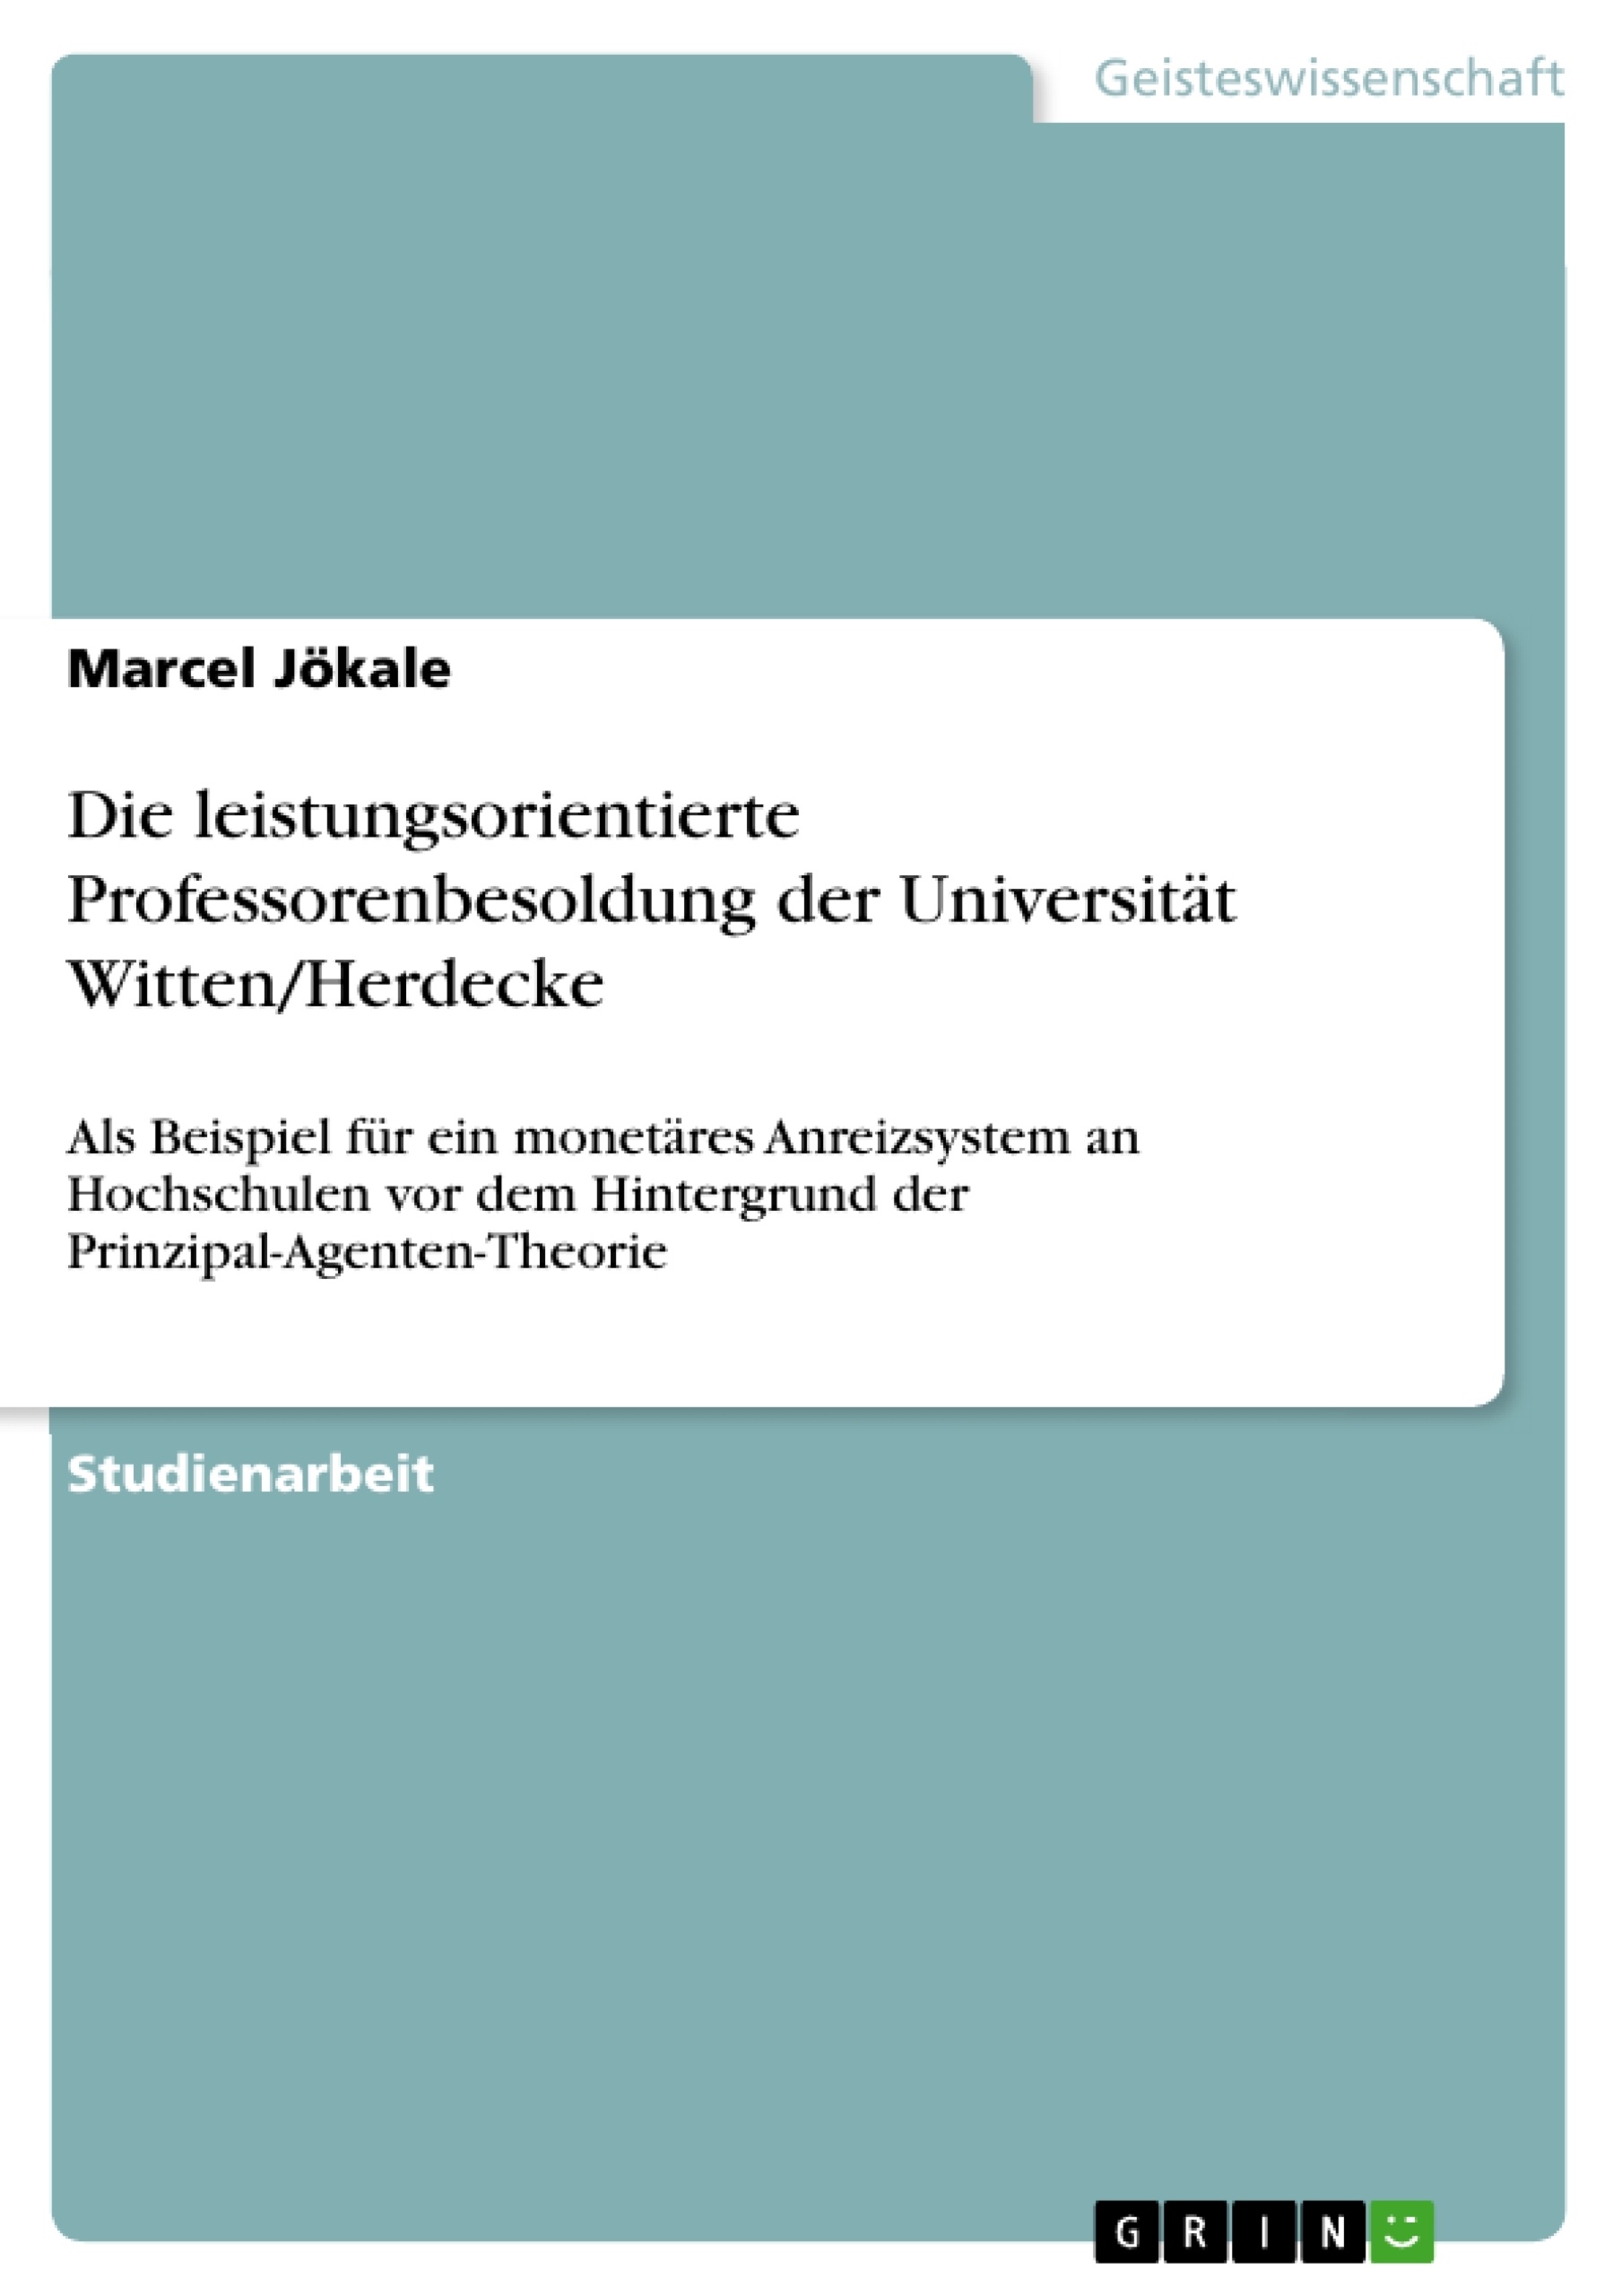 Titre: Die leistungsorientierte Professorenbesoldung der Universität Witten/Herdecke